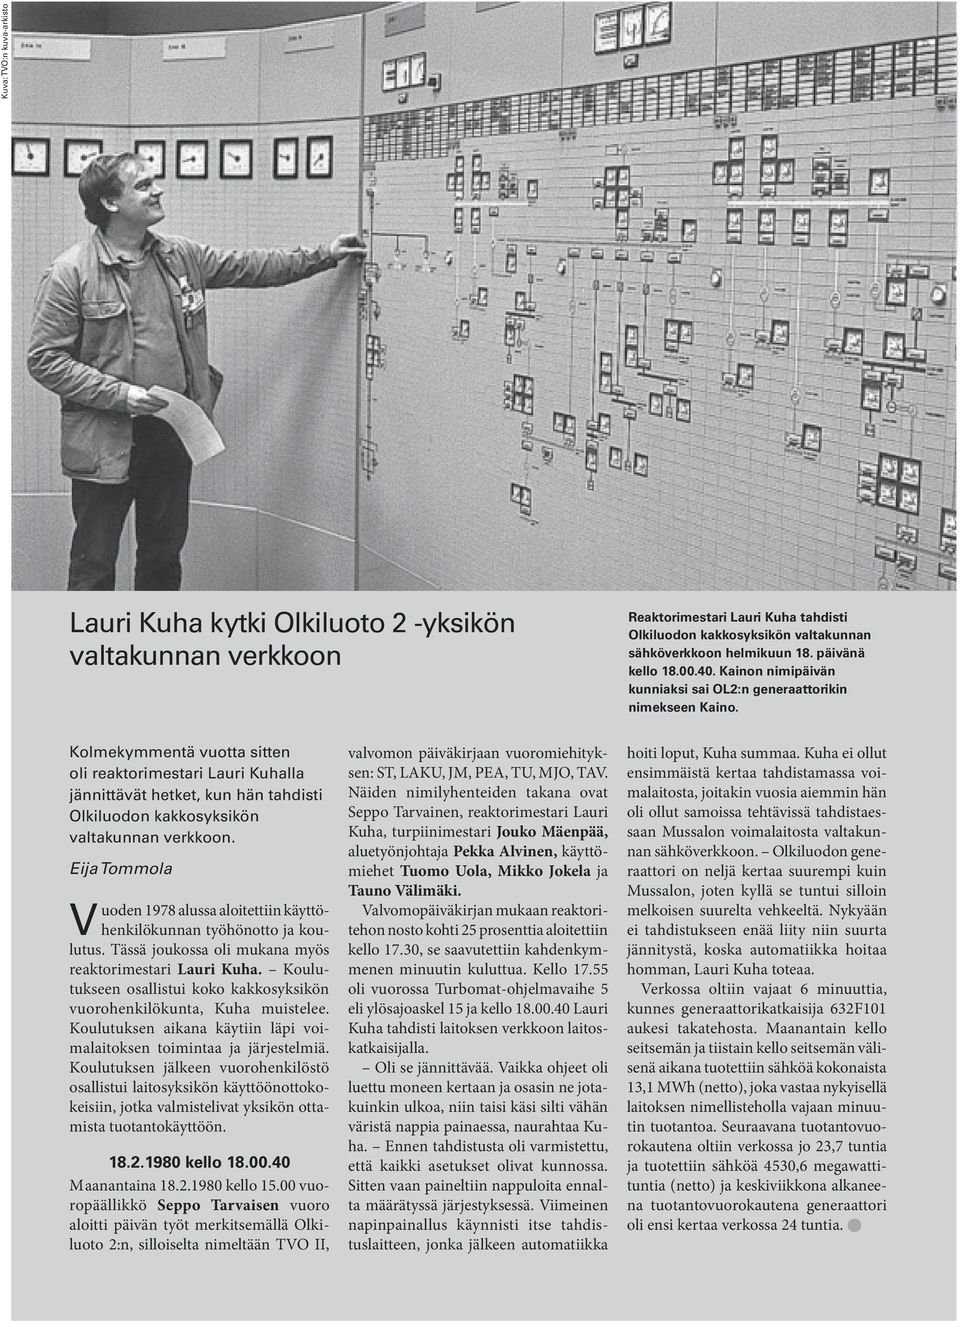 Kolmekymmentä vuotta sitten oli reaktorimestari Lauri Kuhalla jännittävät hetket, kun hän tahdisti Olkiluodon kakkosyksikön valtakunnan verkkoon.